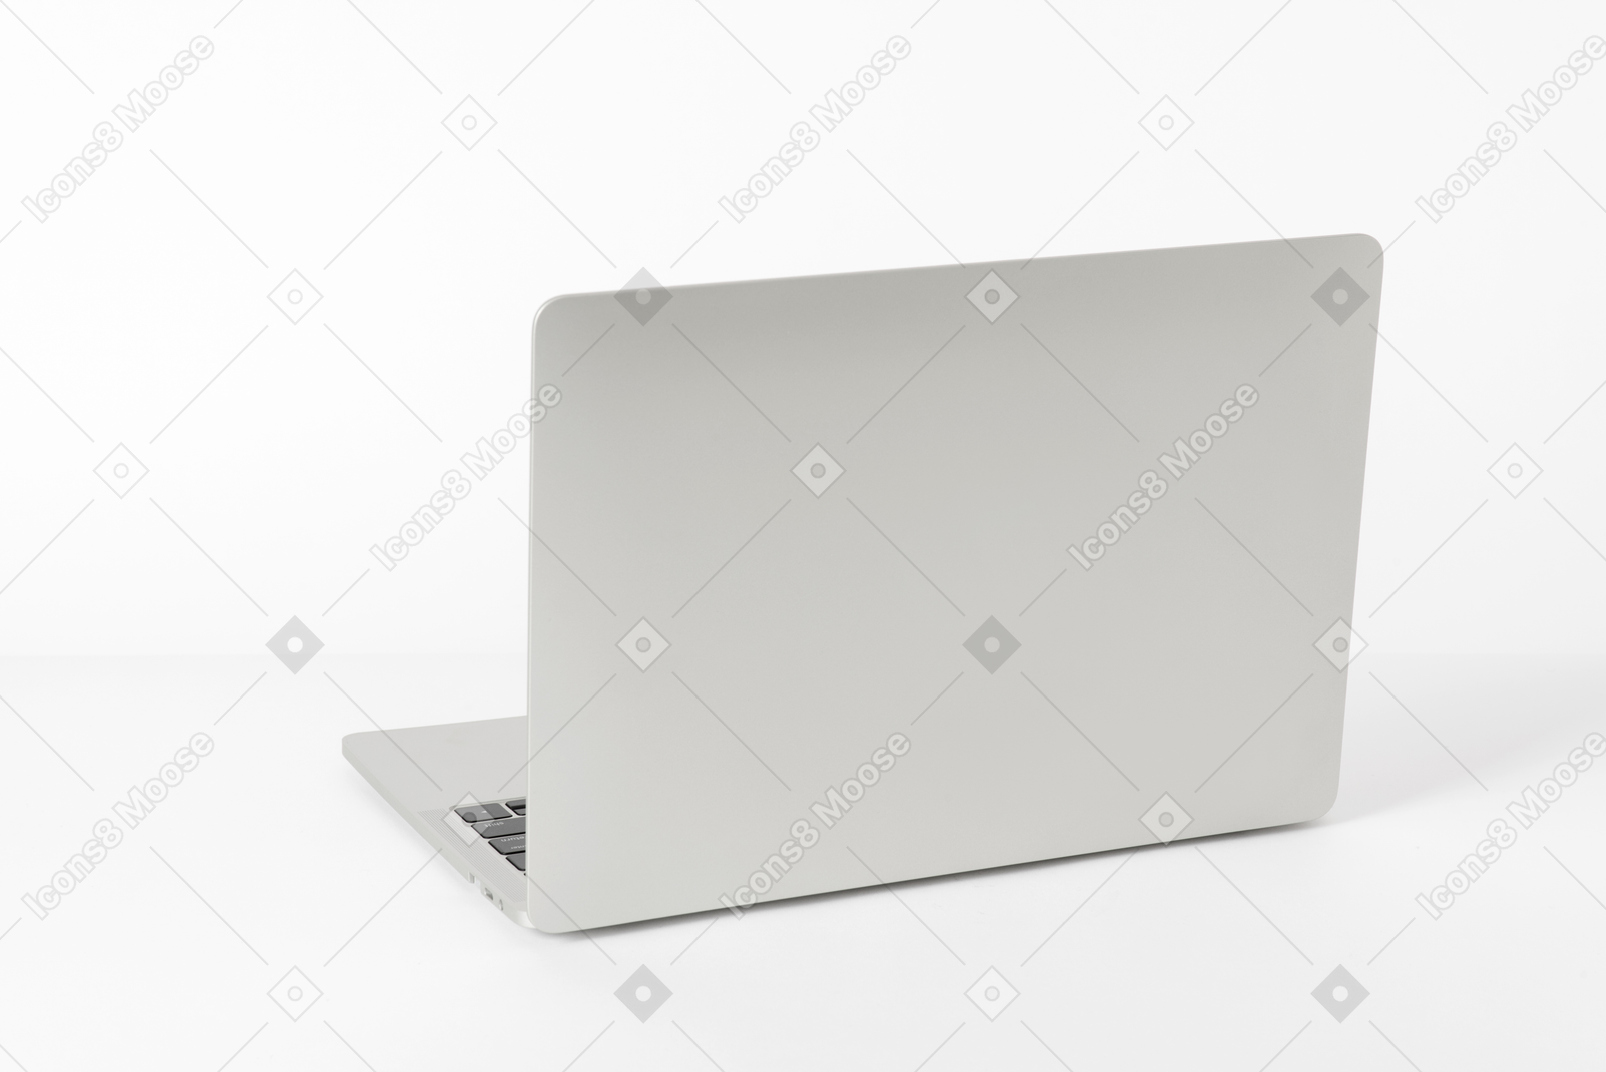 テーブルの上に開いたノートパソコン